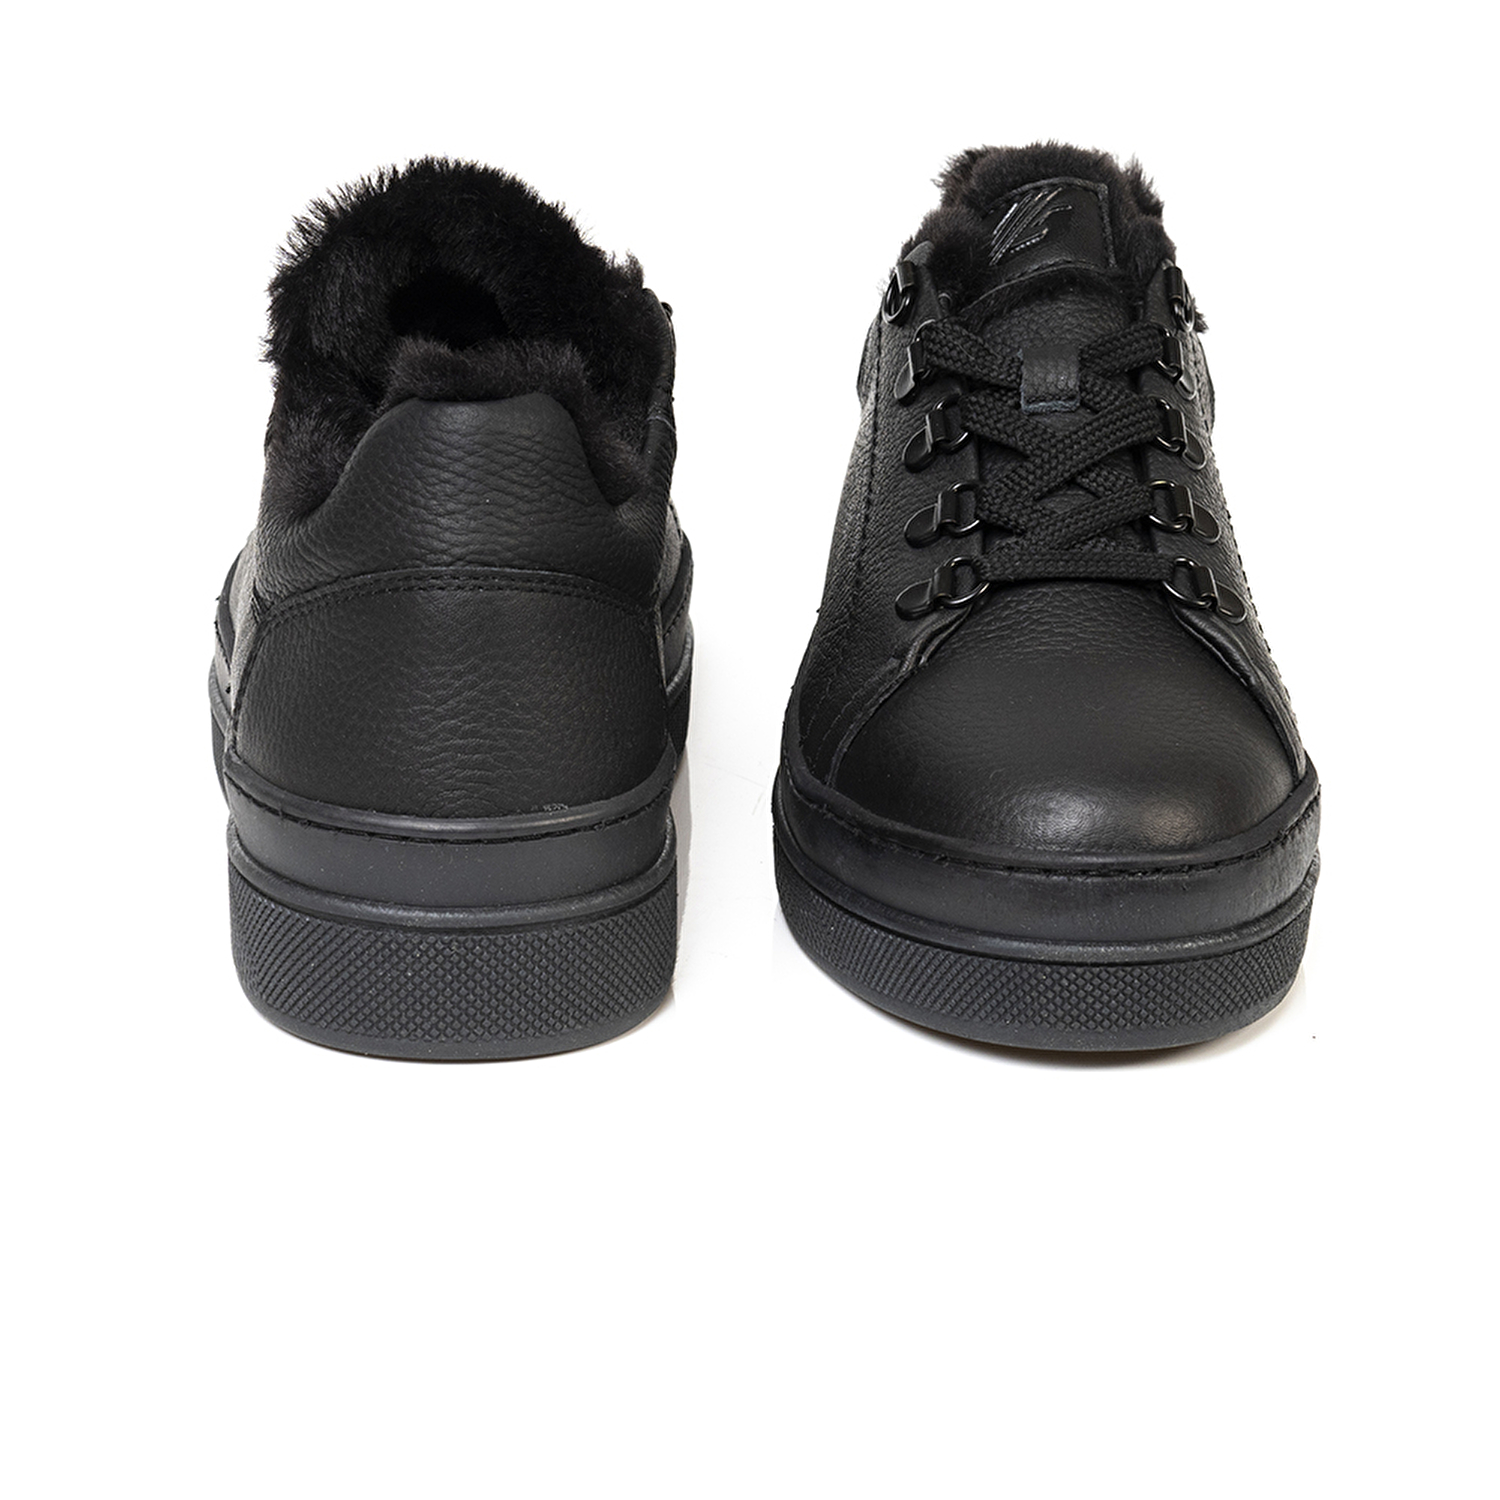 Kadın Siyah Hakiki Deri Sneaker Ayakkabı 3K2SA33070-6